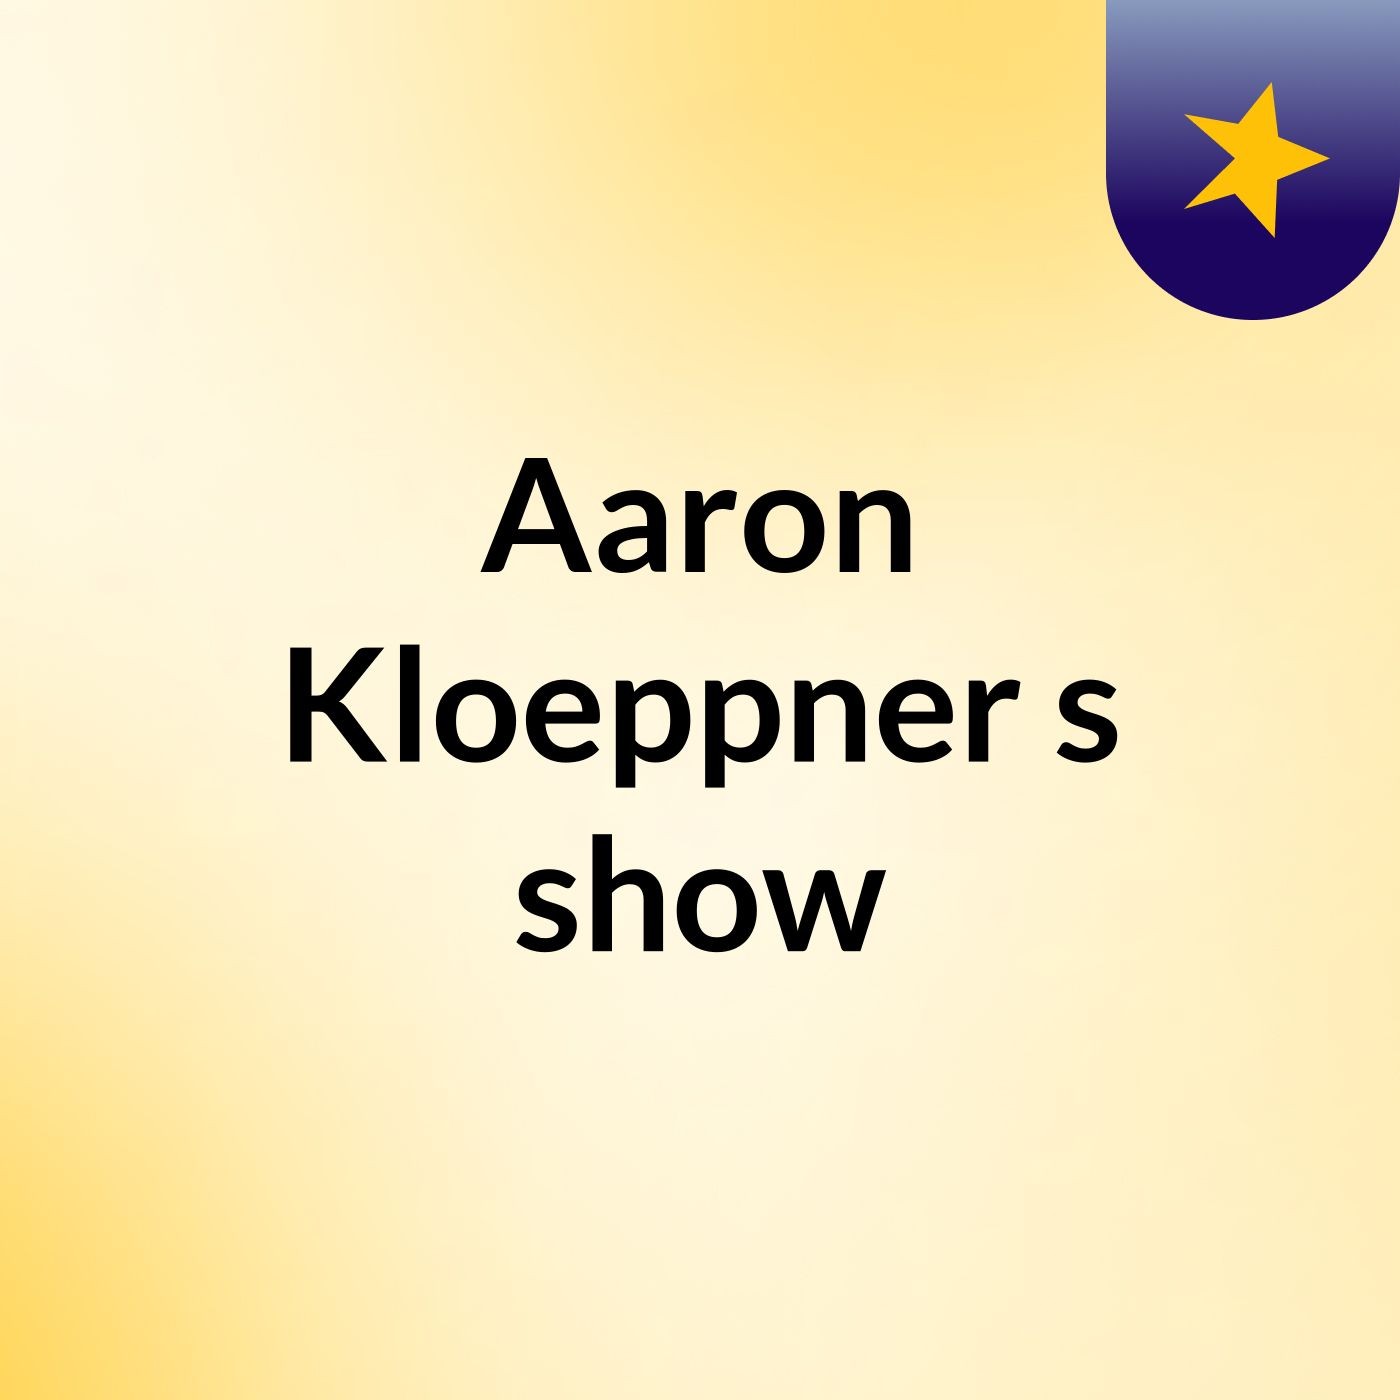 Aaron Kloeppner's show